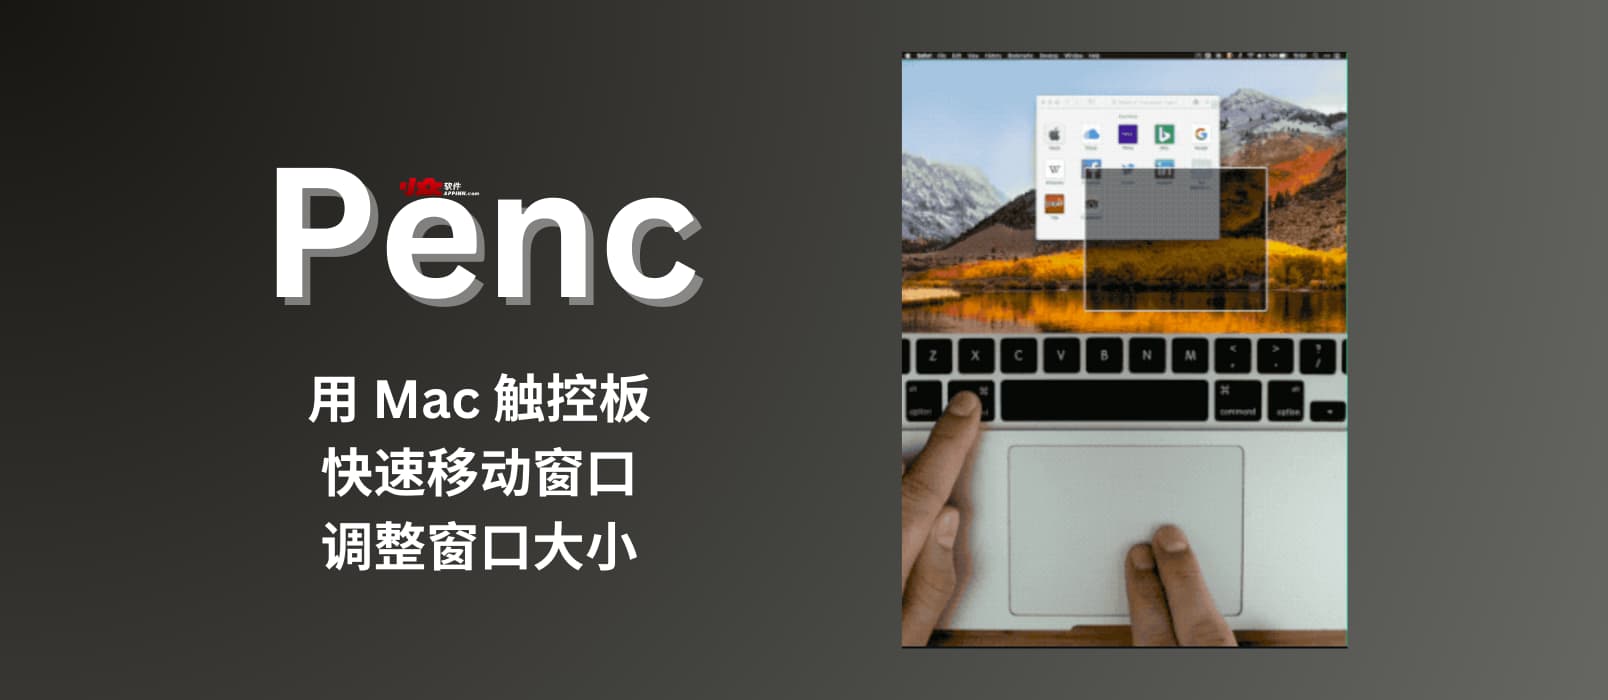 Penc – 用 Mac 触控板快速移动窗口、调整窗口大小